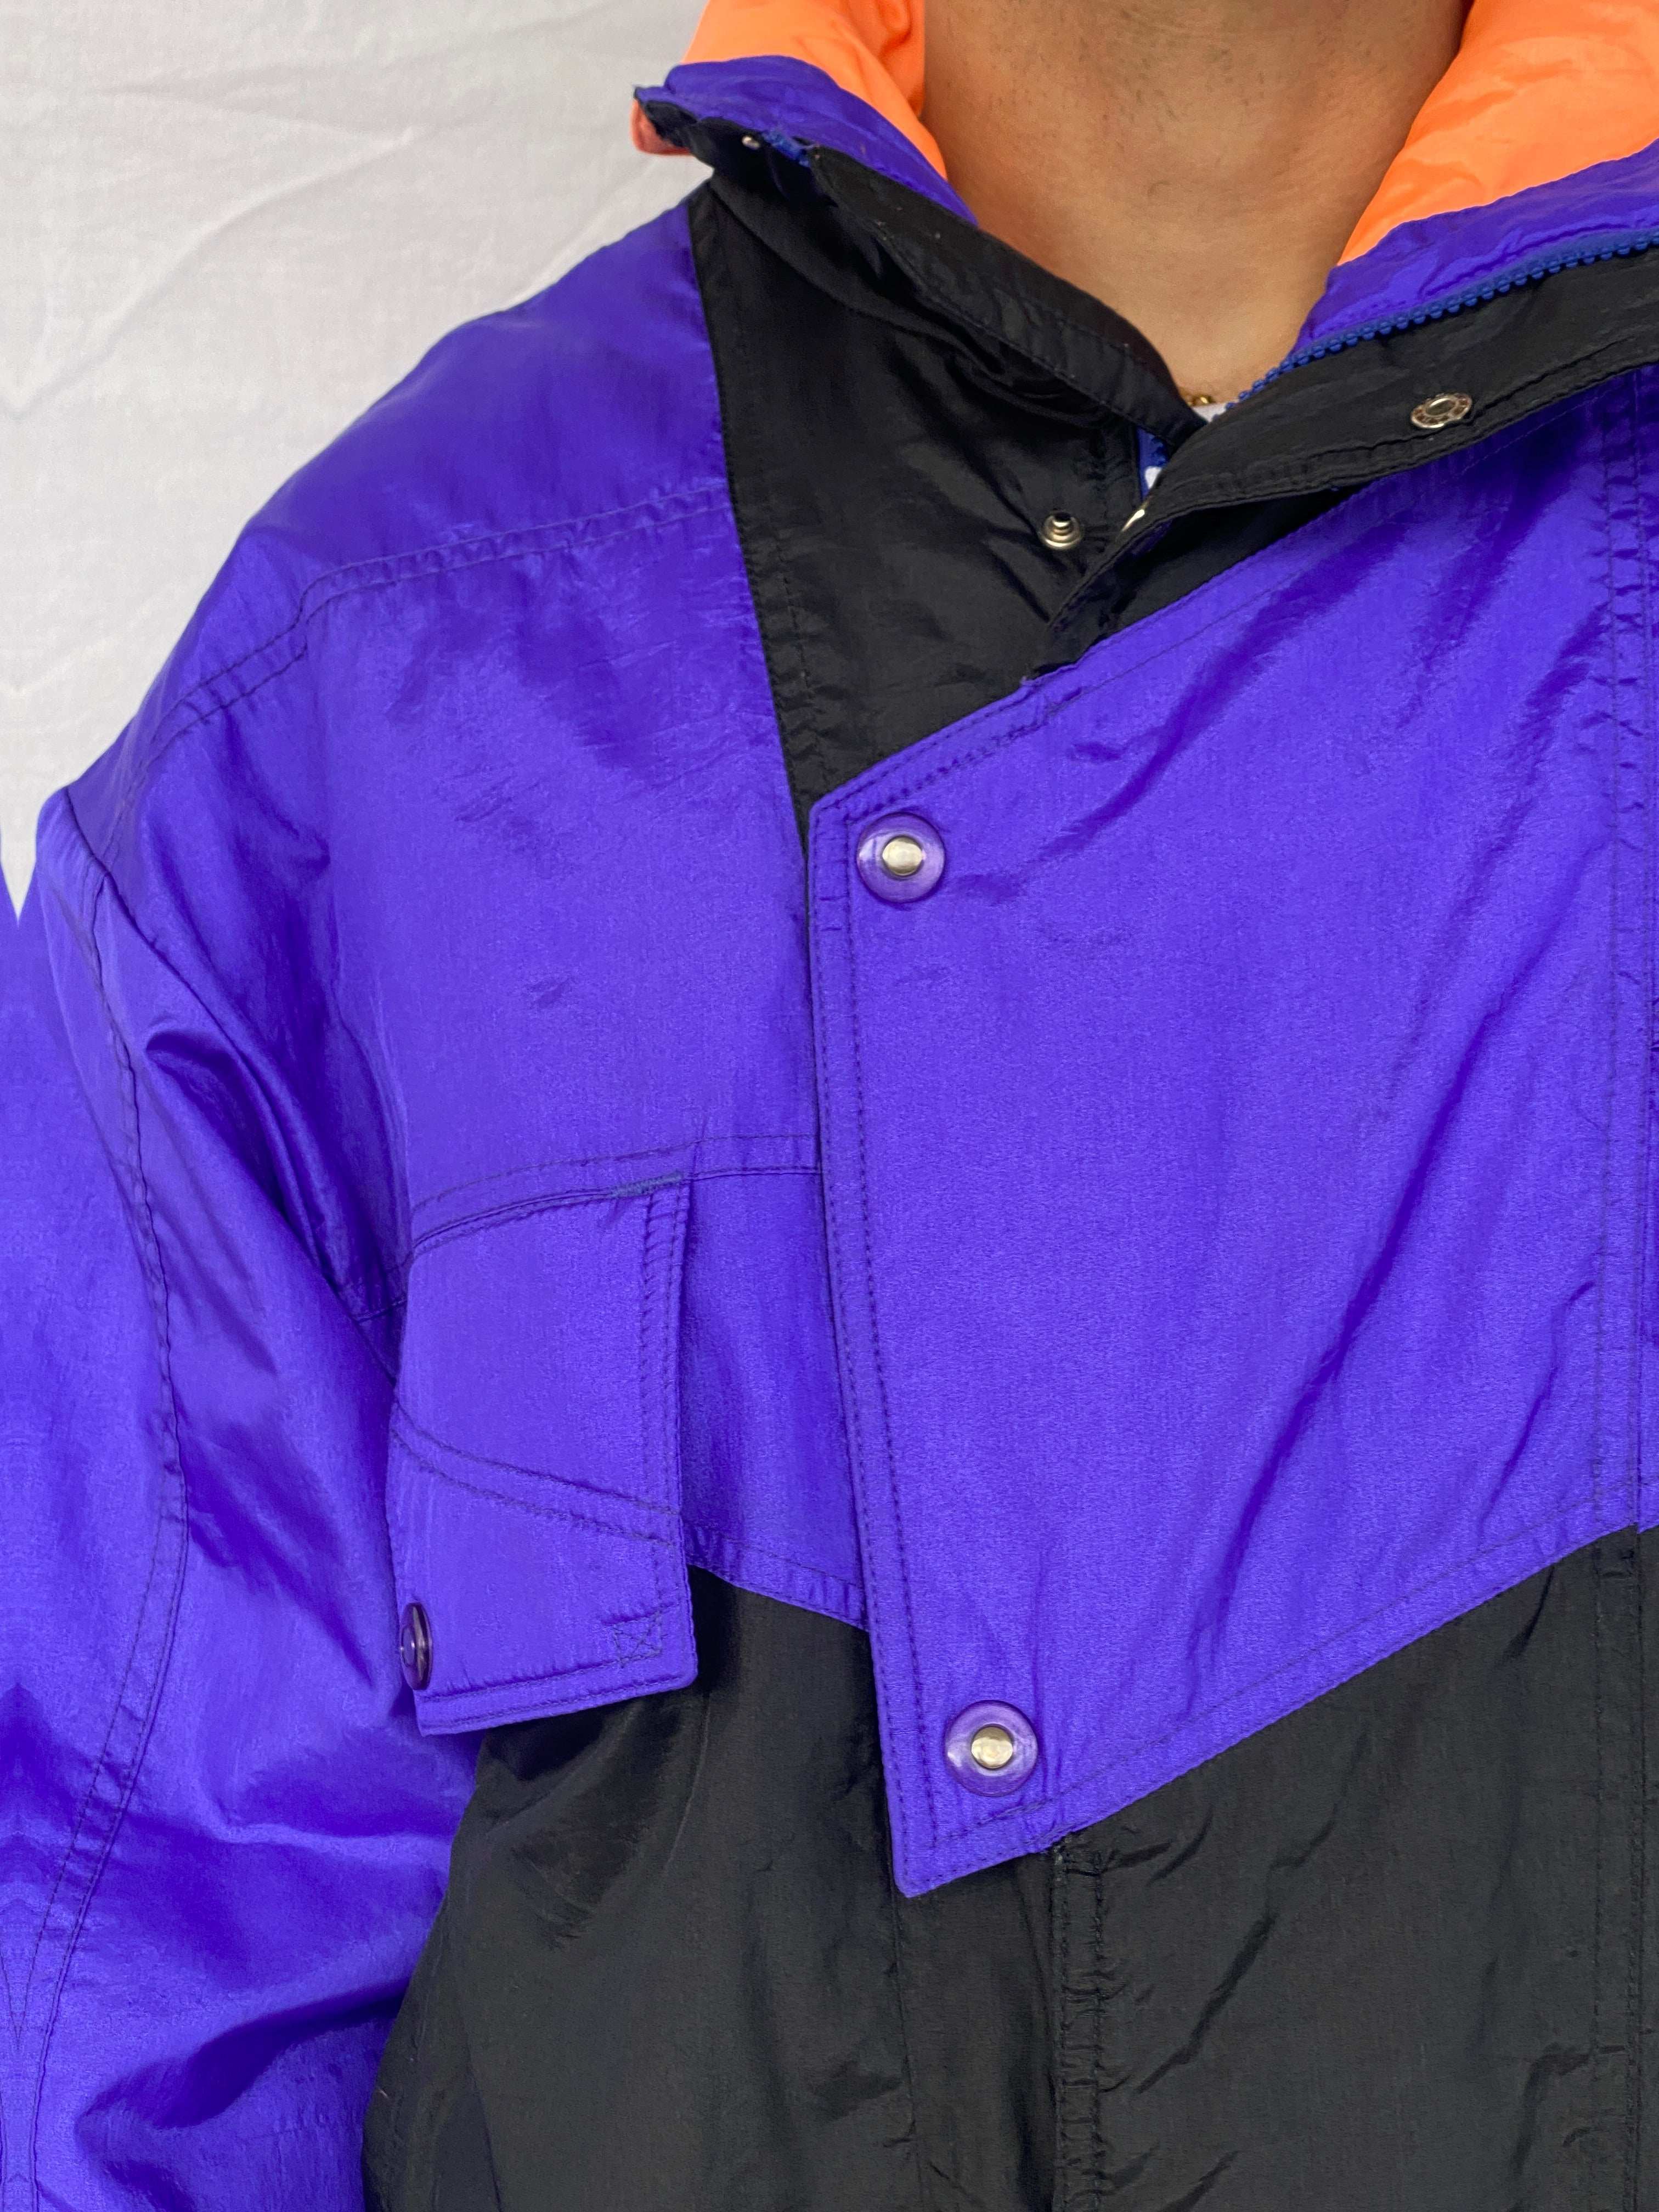 Vintage White Stag Purple Puffer Ski Jacket - Size M - Balagan Vintage Ski Jacket 80s, 90s, Abdullah, ski jacket, winter